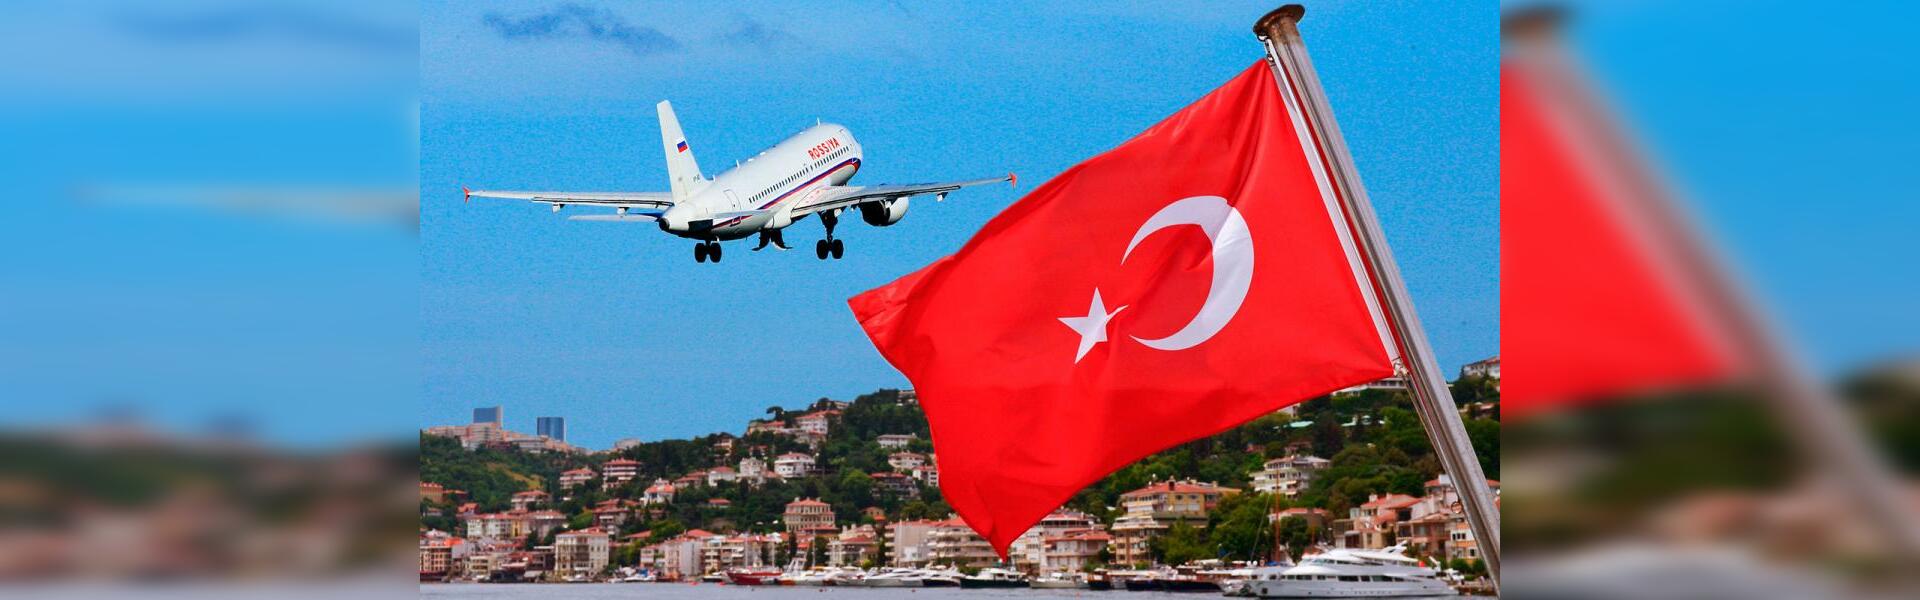 Граждане рф в турцию. Самолет Турция. Полет в Турцию. Турецкий флаг и самолет. Возобновление авиасообщения России с Турцией.